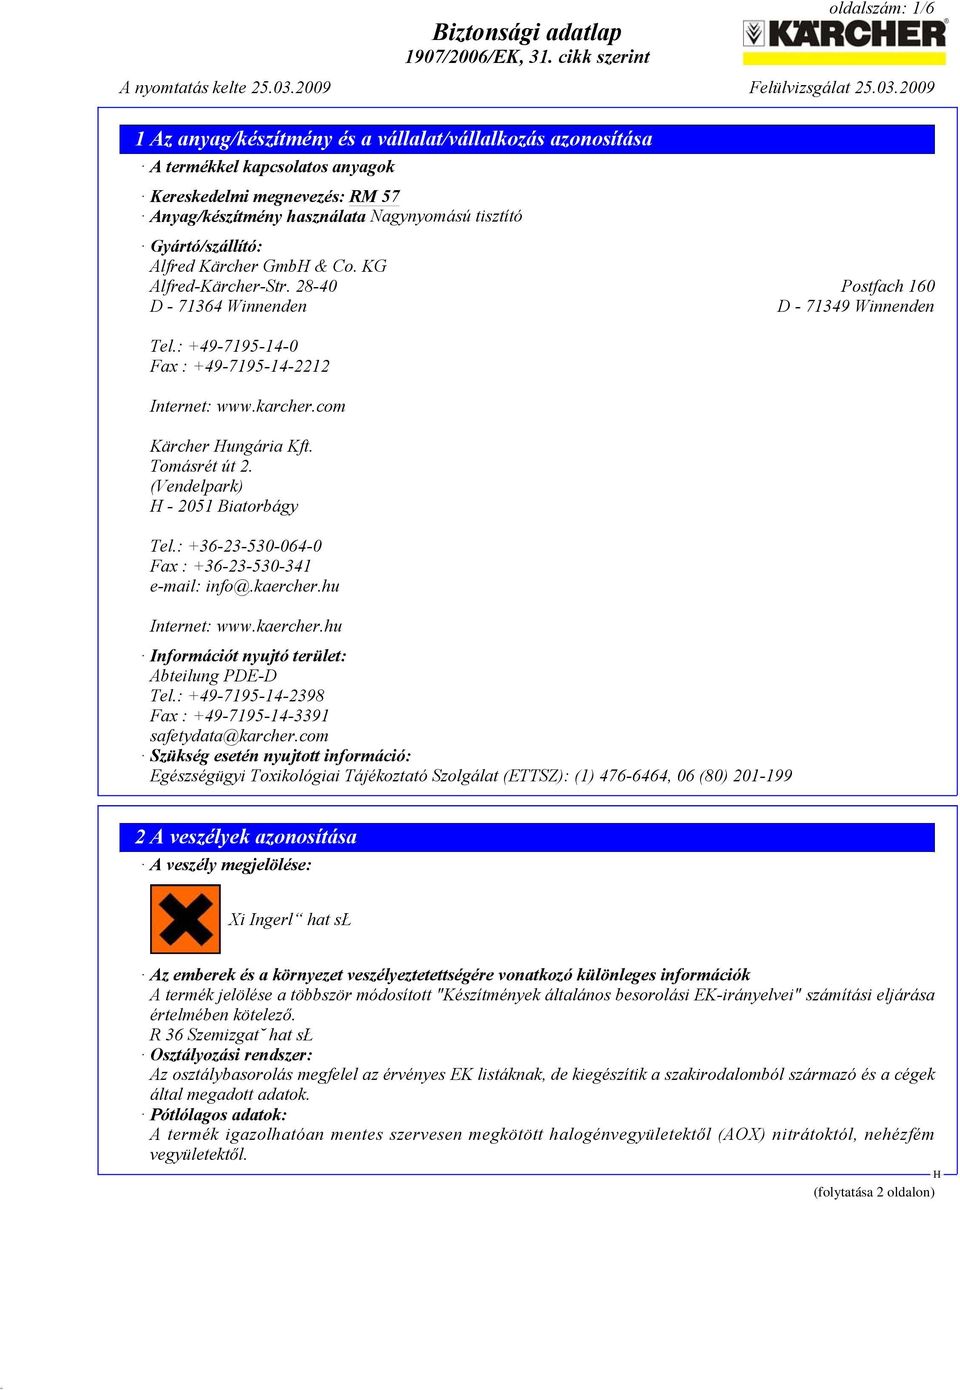 (Vendelpark) - 2051 Biatorbágy Tel.: +36-23-530-064-0 Fax : +36-23-530-341 e-mail: info@.kaercher.hu Internet: www.kaercher.hu Információt nyujtó terület: Abteilung PDE-D Tel.